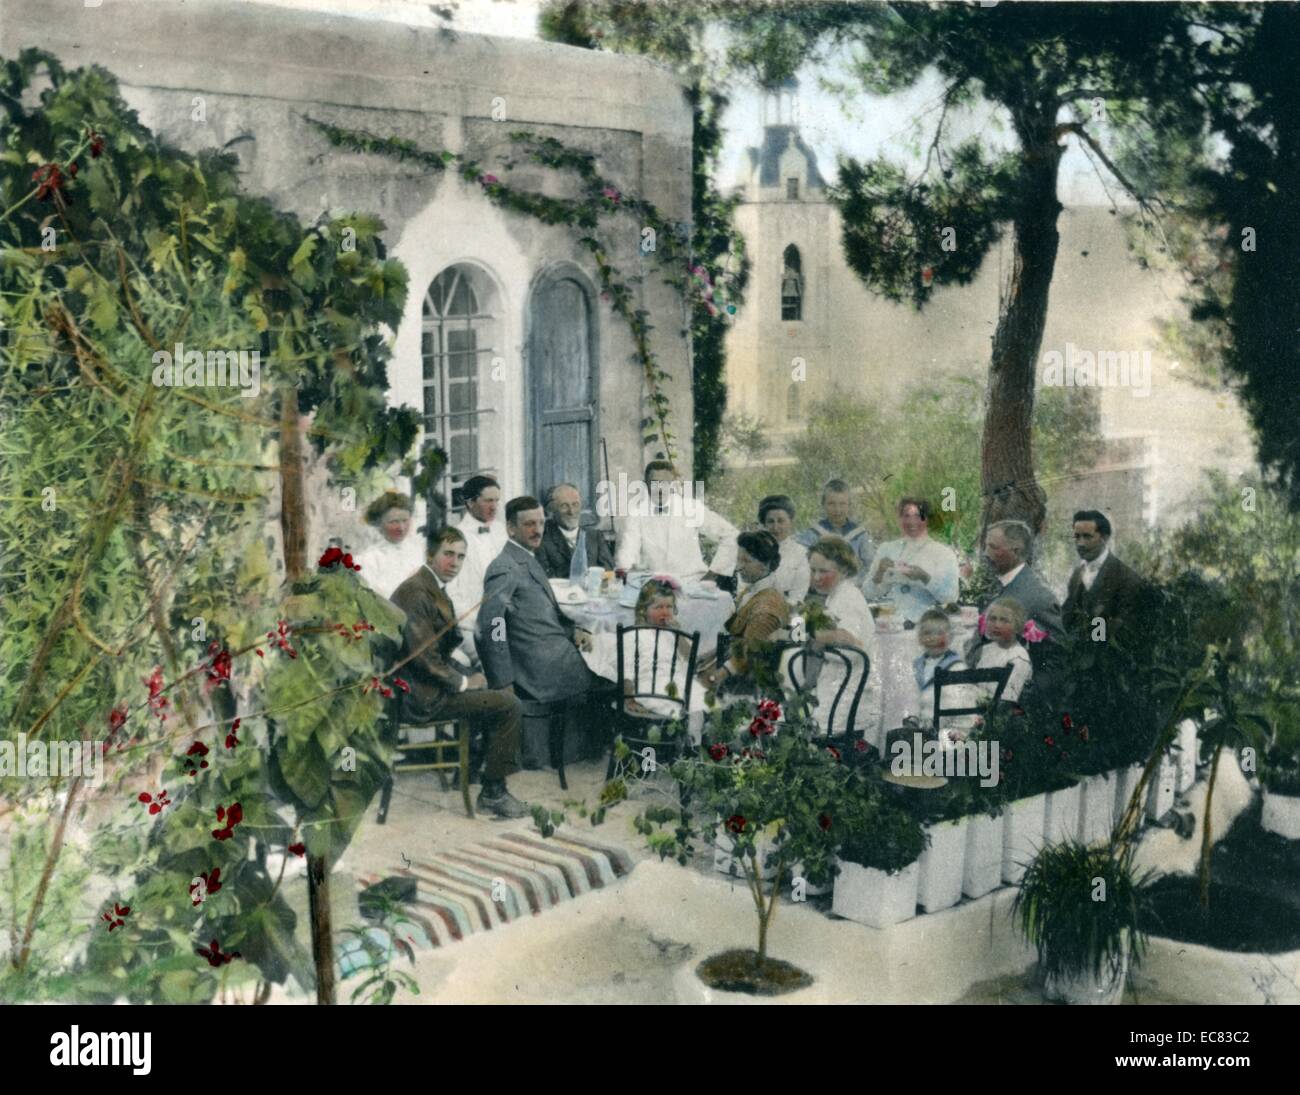 La main, photographie de la colonie américaine établie à Jérusalem par les membres d'une société utopique chrétienne dirigée par Anna et Horatio Spafford. Datée 1919 Banque D'Images